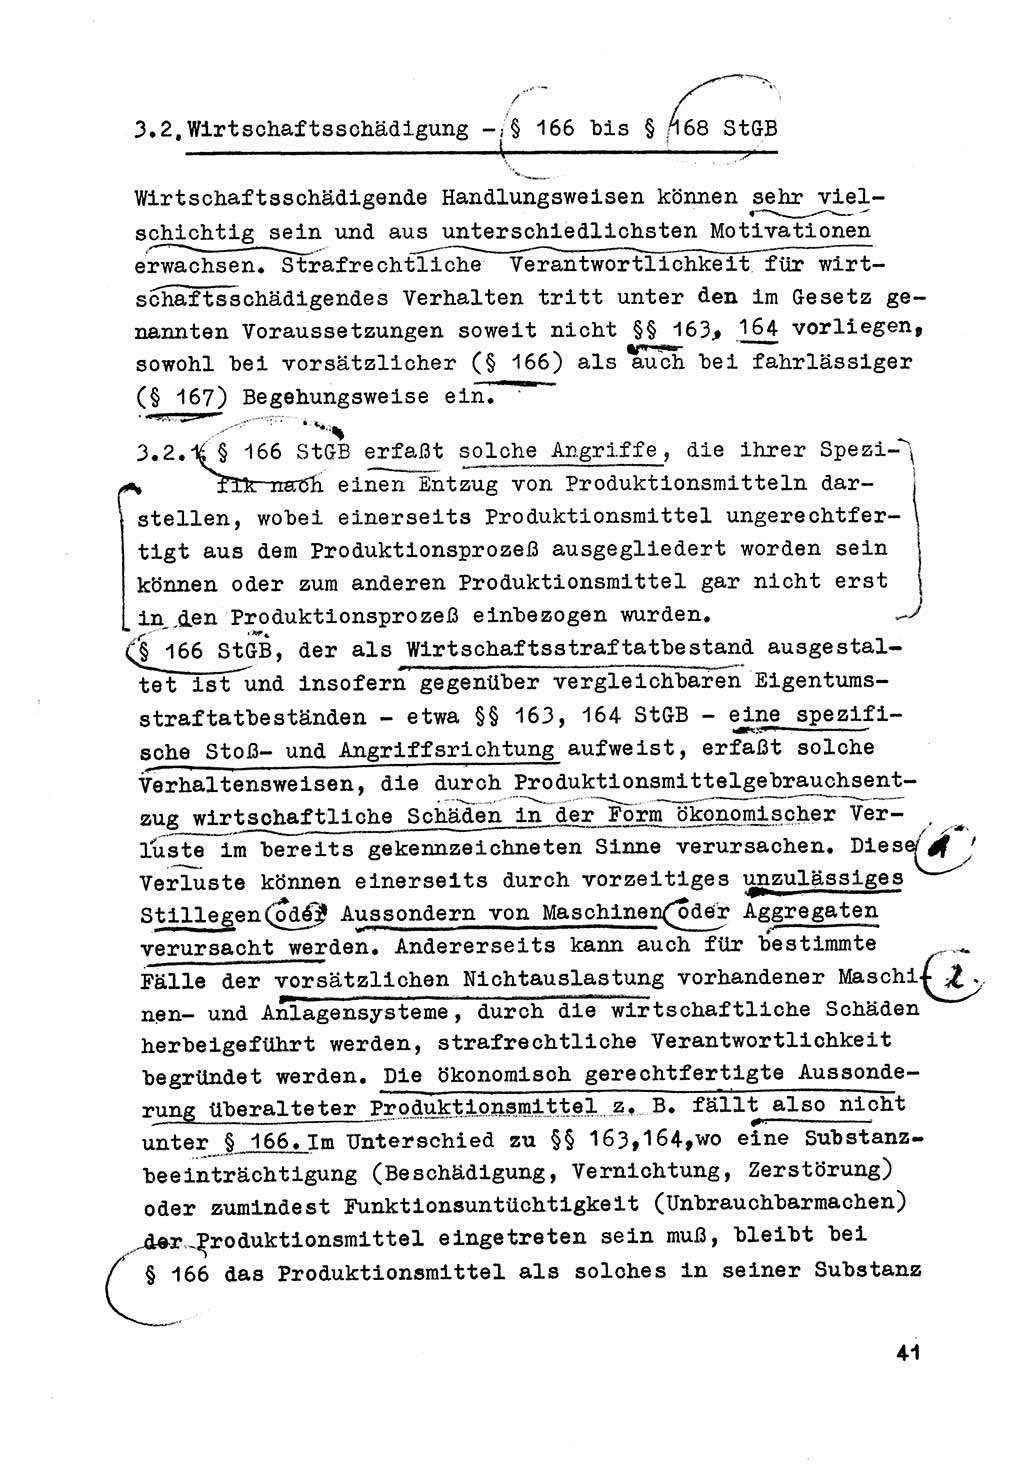 Strafrecht der DDR (Deutsche Demokratische Republik), Besonderer Teil, Lehrmaterial, Heft 6 1970, Seite 41 (Strafr. DDR BT Lehrmat. H. 6 1970, S. 41)